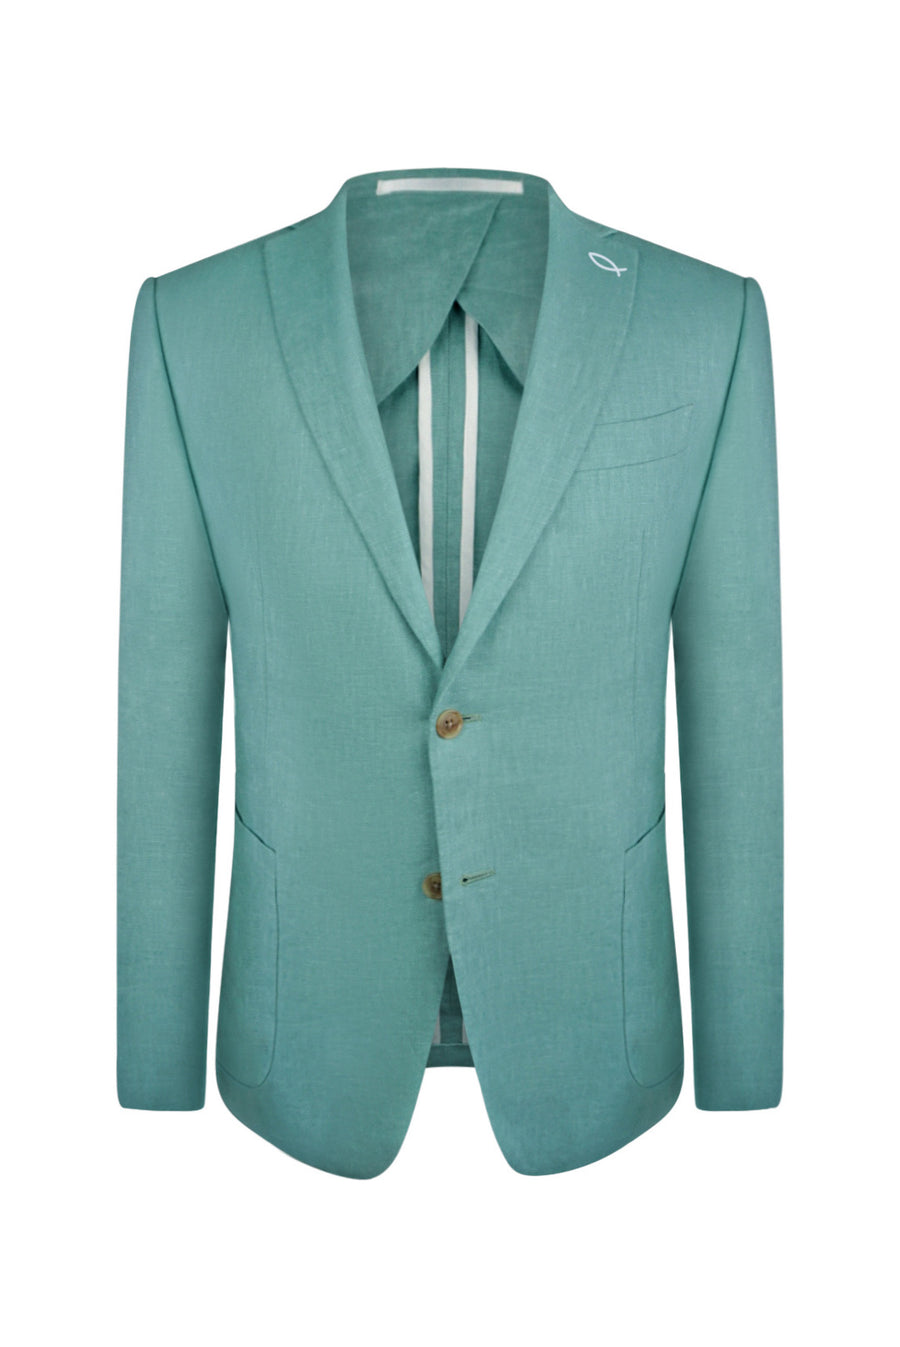 Seafoam Linen Suit Jacket